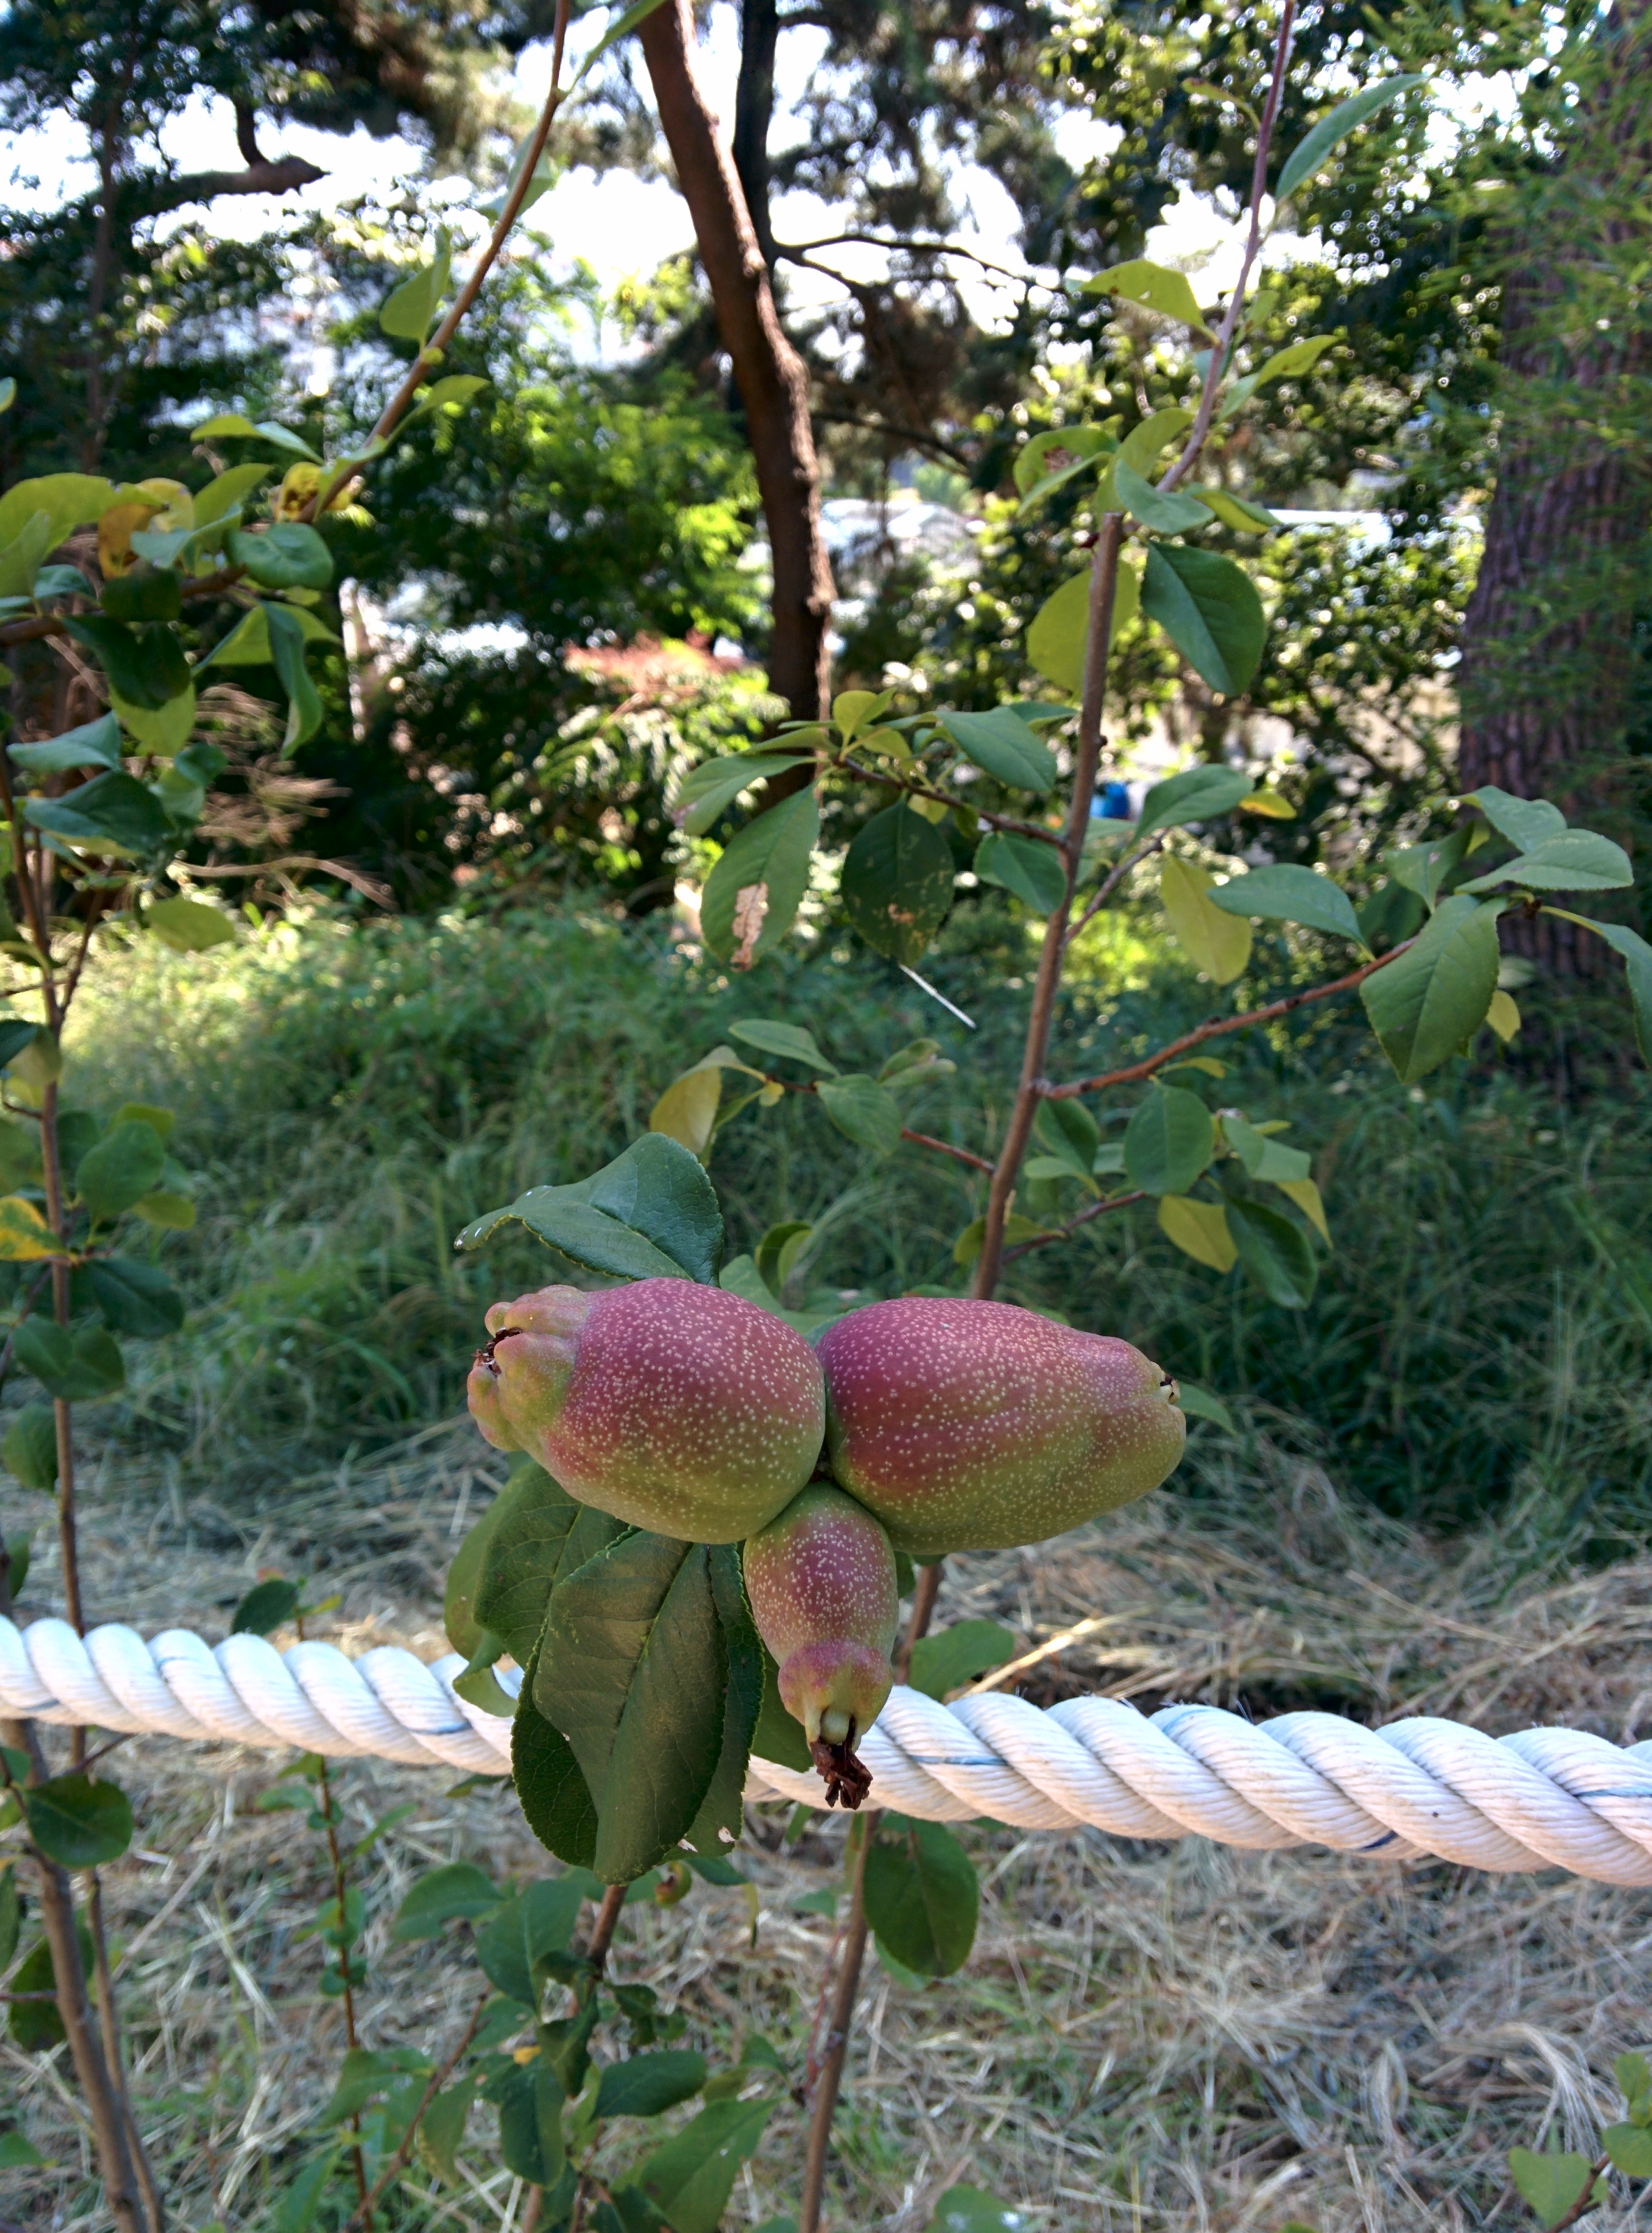 IMG_20150909_144338.jpg 길가 울타리에서 열매를 맺은 명자나무(산당화)